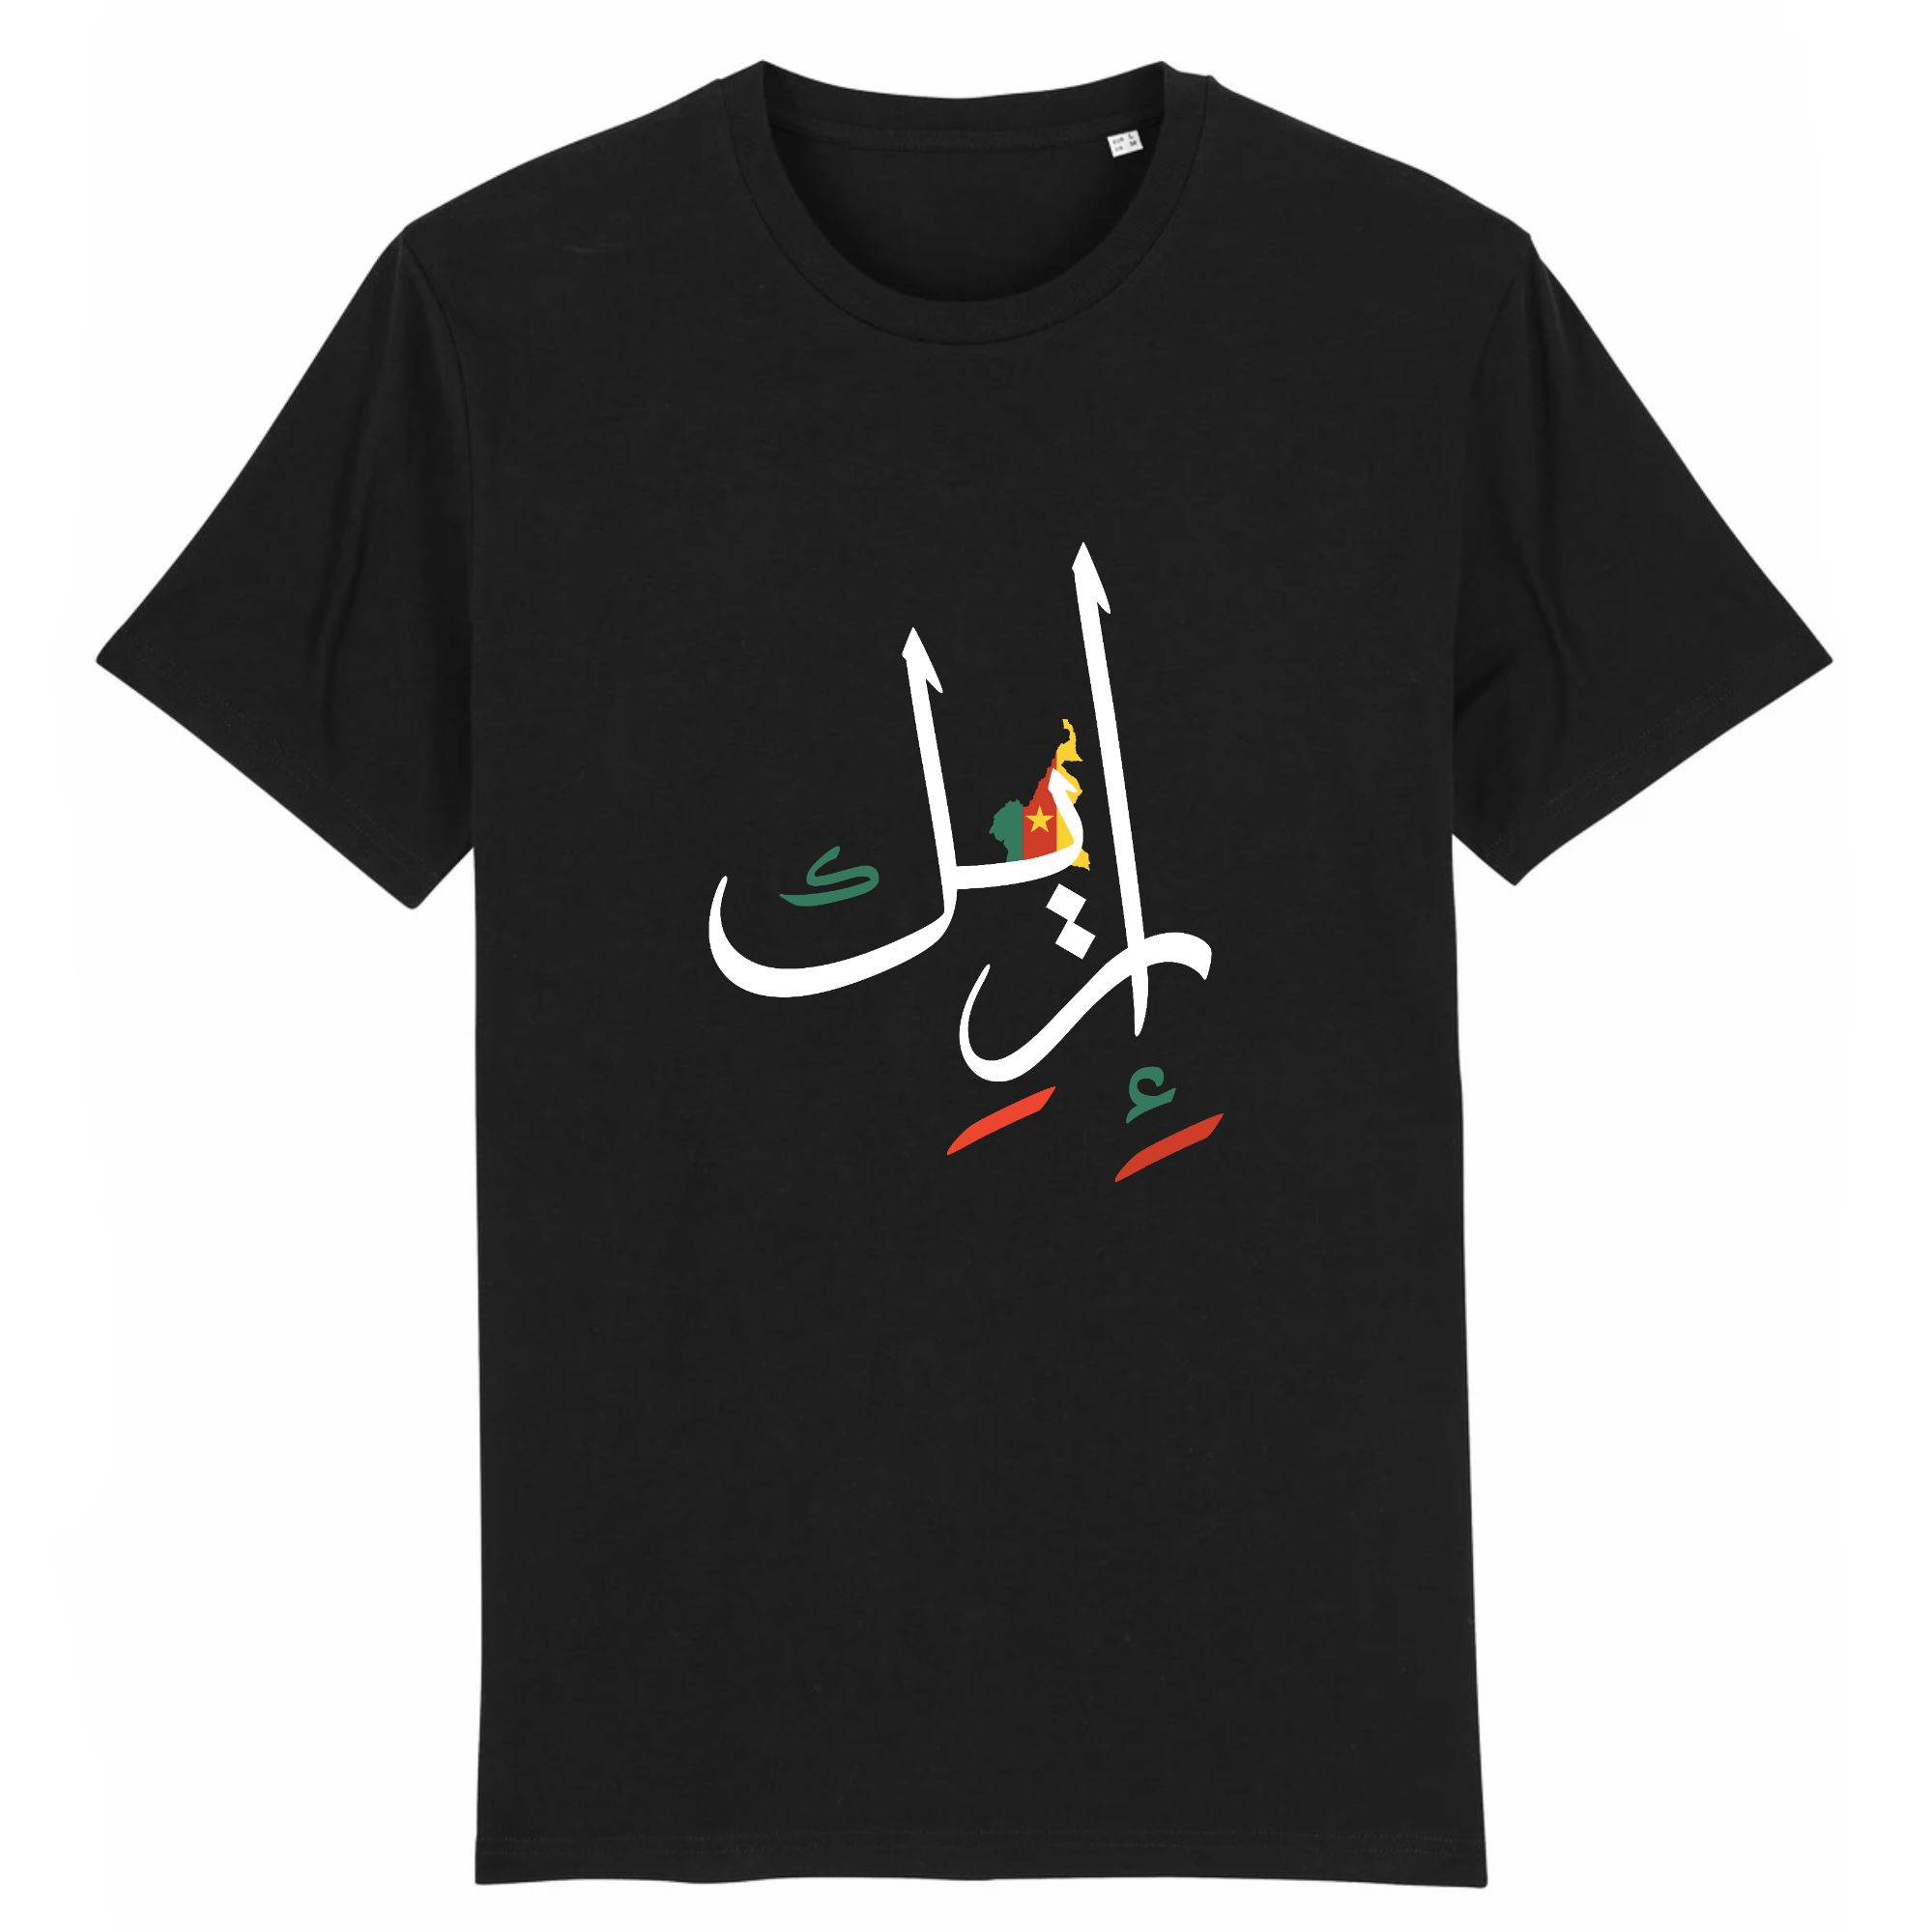 Eric - T-shirt Calligraphie Arabe